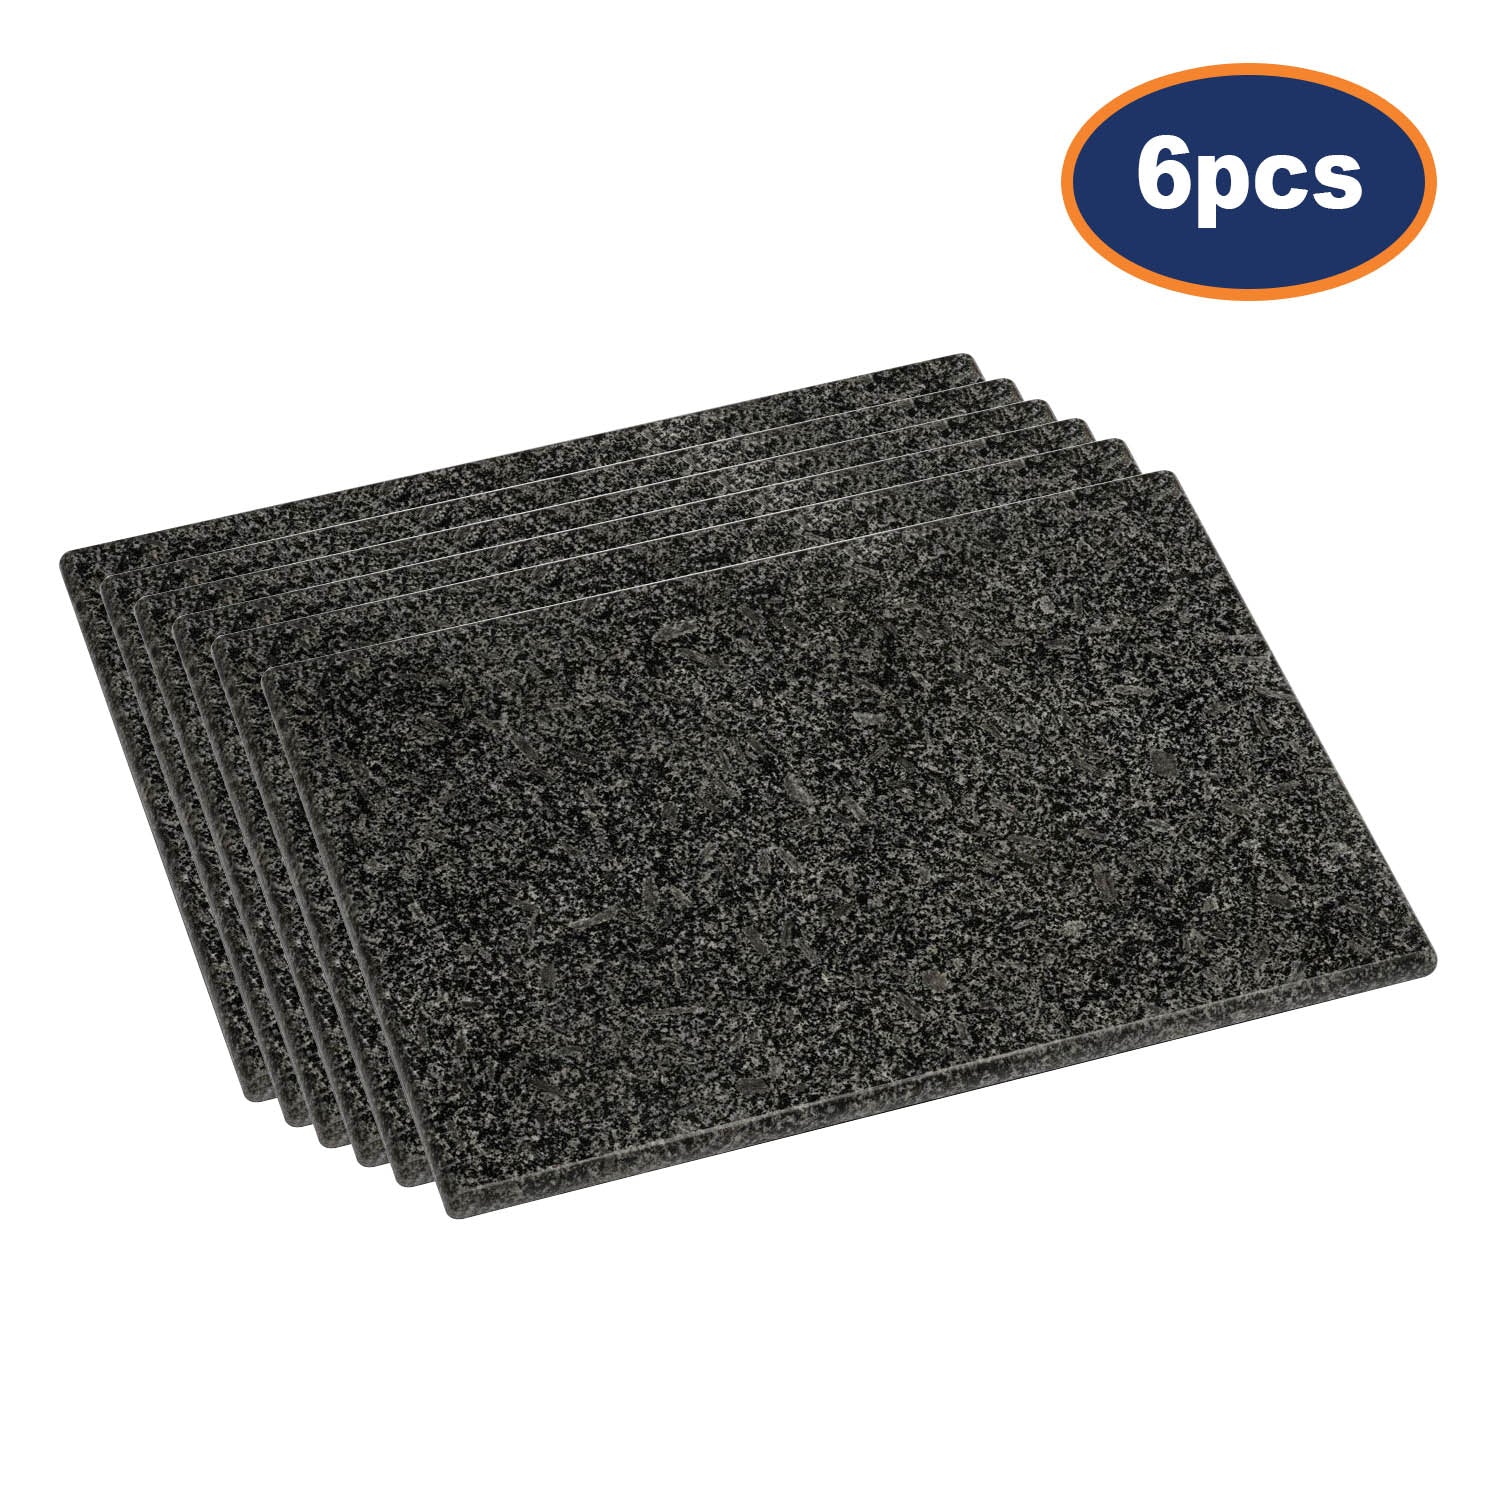 6pcs Black Speckled Granite Cutting  Board